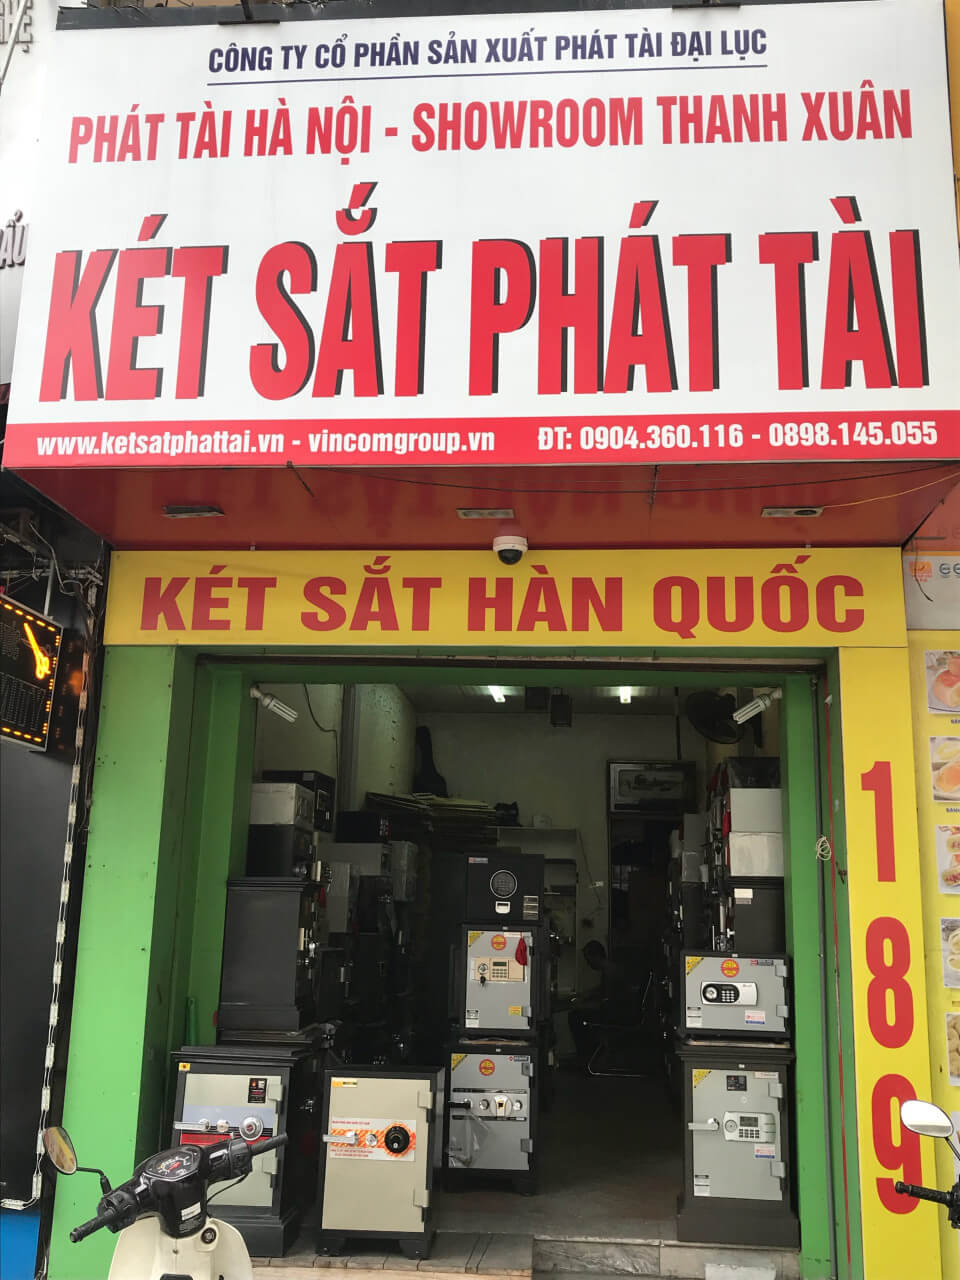 ket-sat-phat-tai